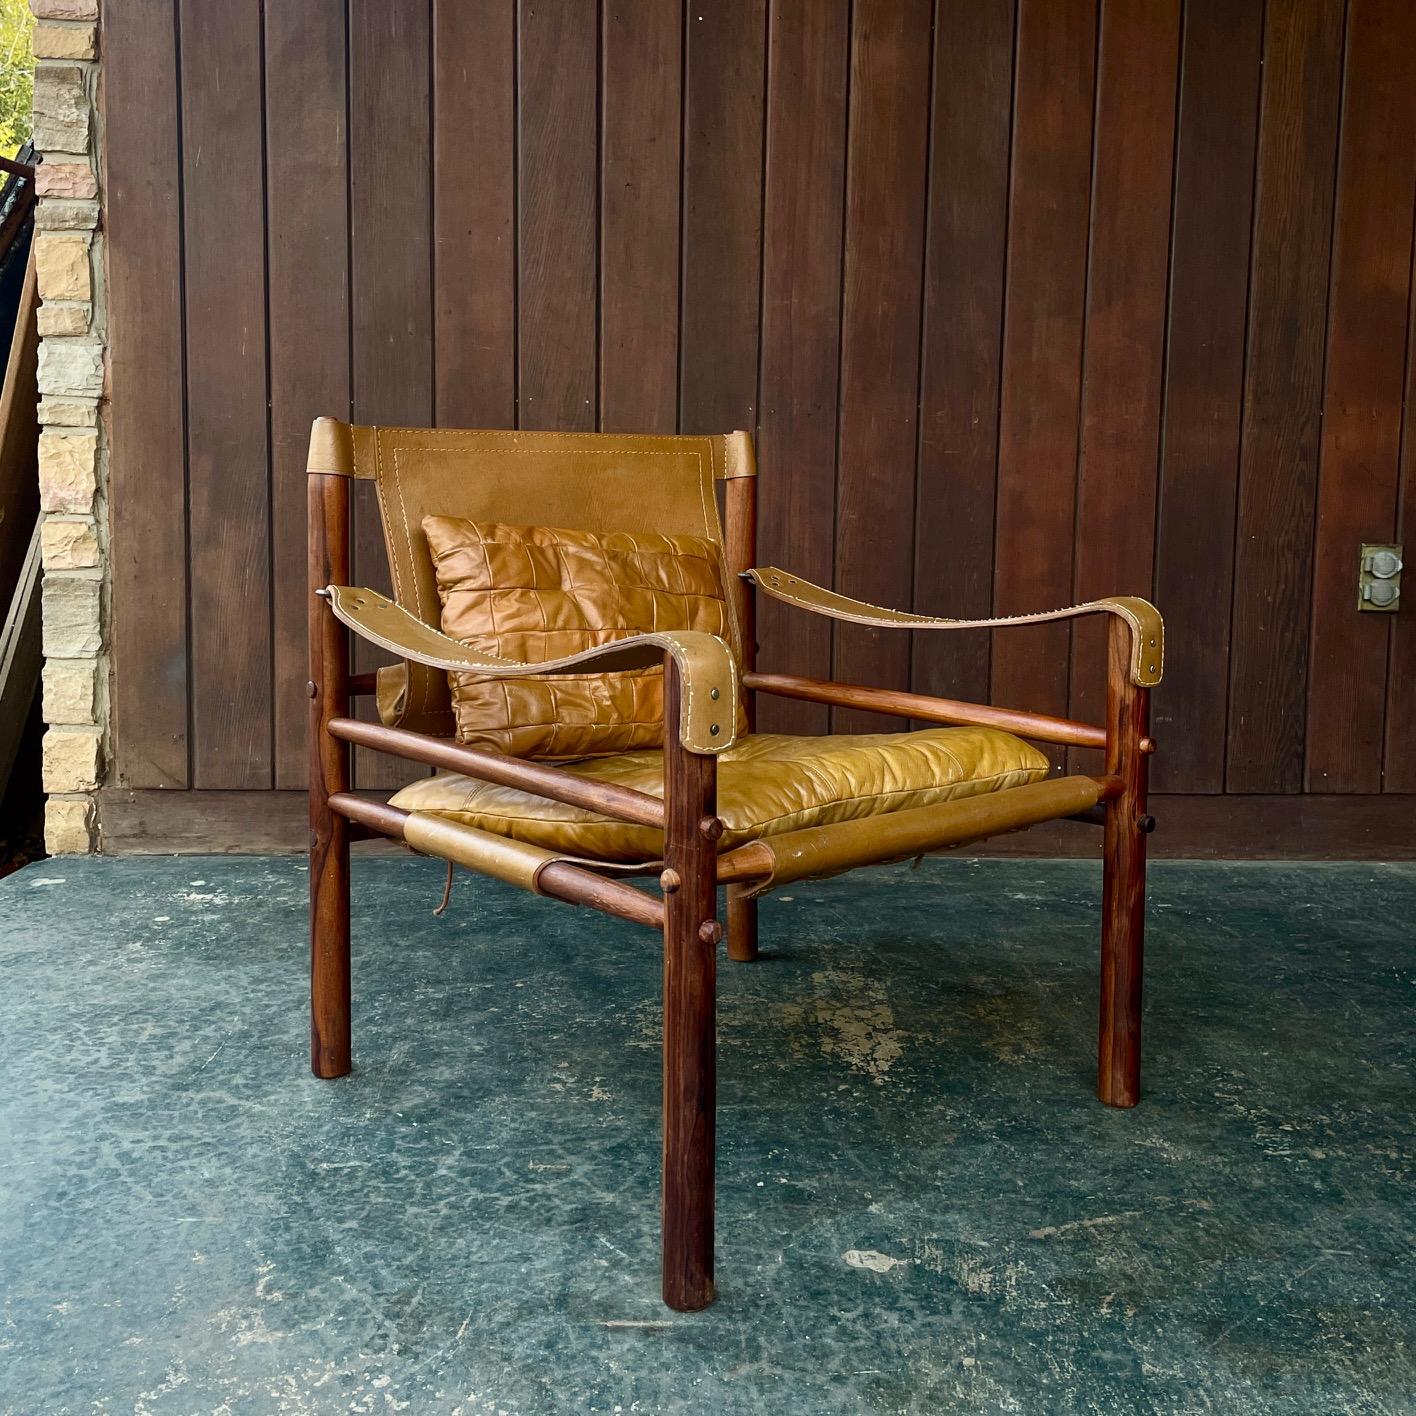 La chaise safari Sirocco conçue par Arne Norells en 1966. Cet exemplaire est en cuir de couleur camel, avec deux coussins et des écharpes avec des ferrures en laiton. Conçu pour se décomposer en vue d'une expédition à plat ou d'un camping dans le